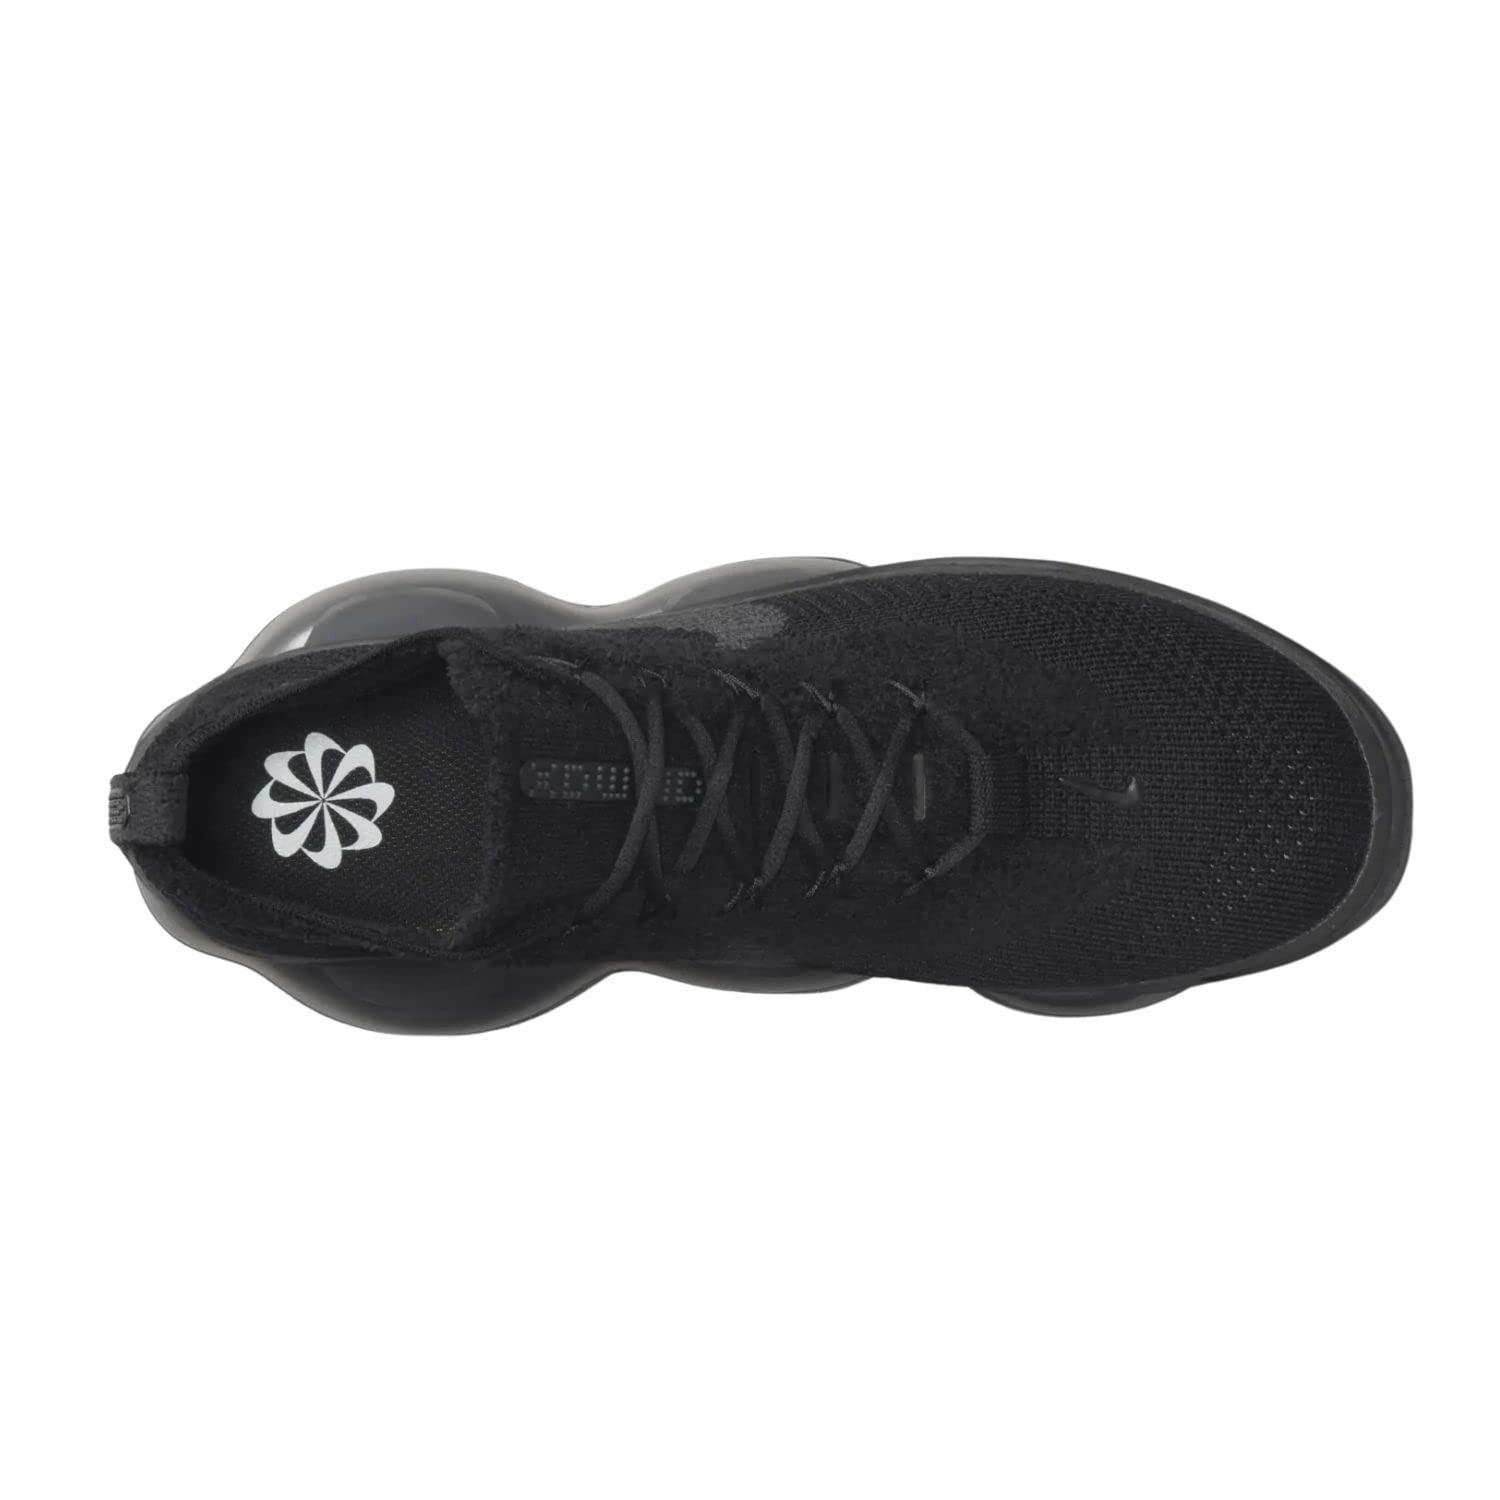 Nike Mens Air Max Scorpion Flyknit DJ4701 003 Triple Black - Size 11